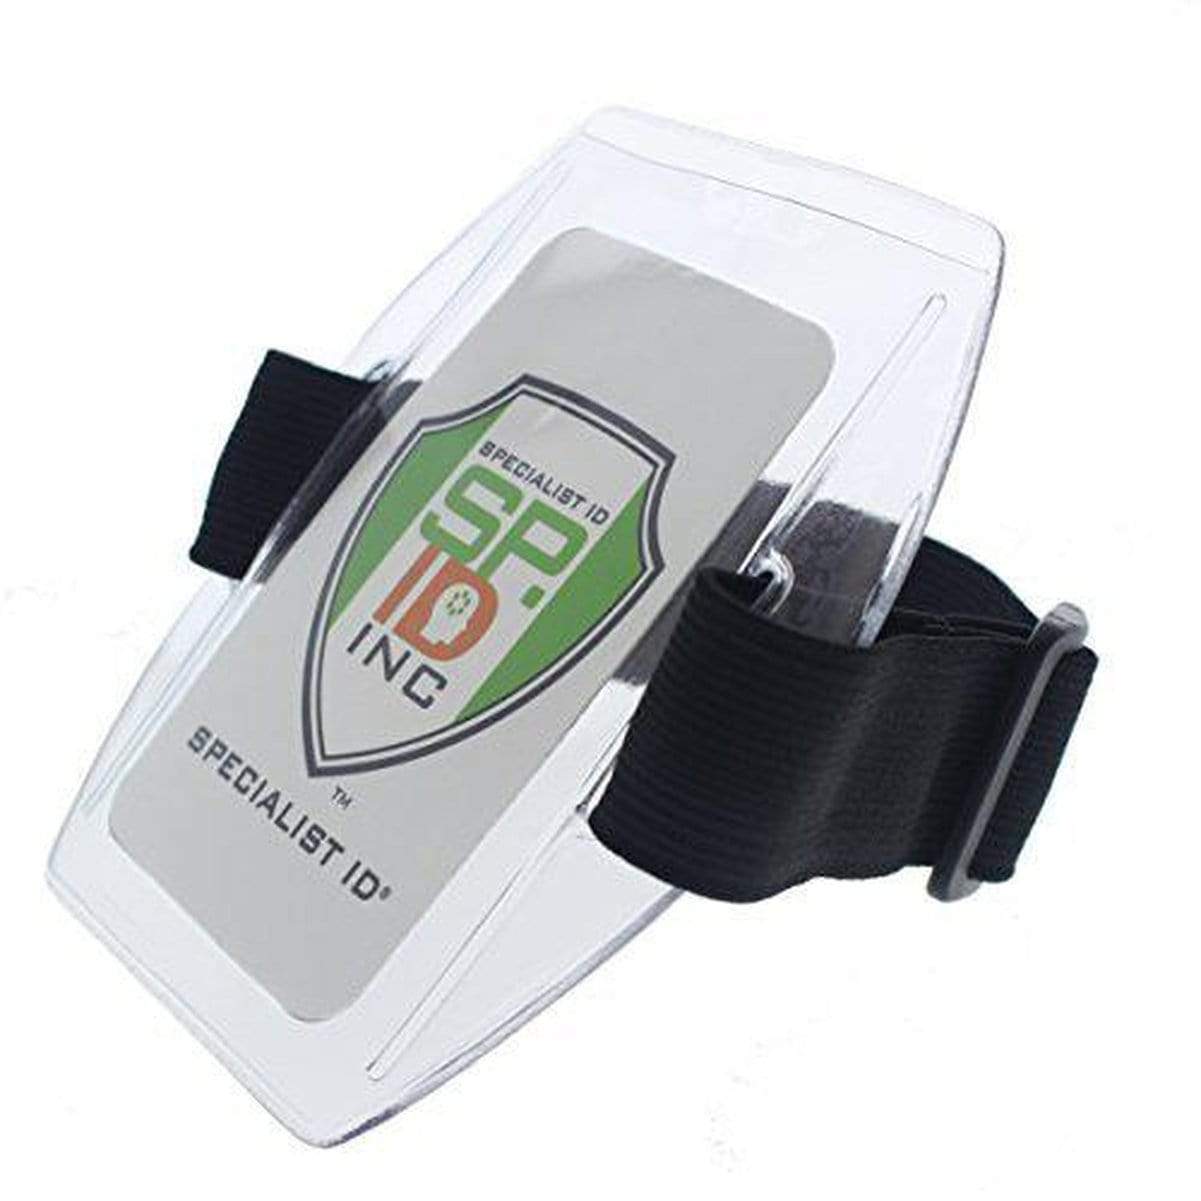 Wonderbaar Armband Badge Holder and More Vinyl ID Badge Holders. Order online DX-91